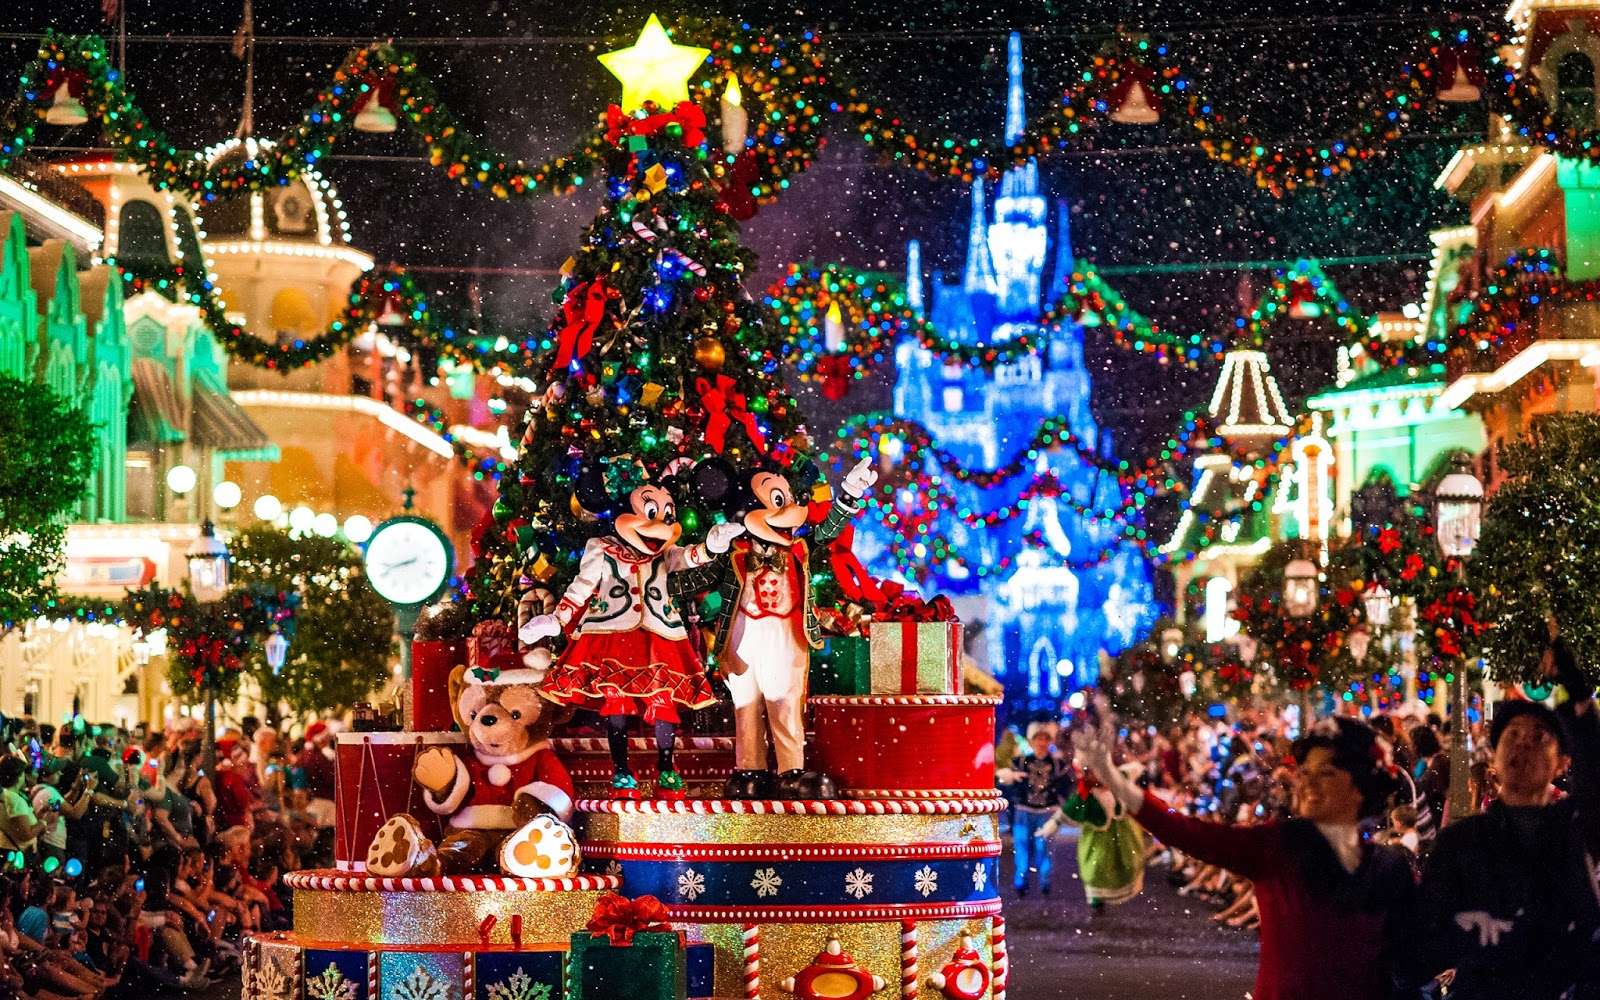 Χριστούγεννα στη Disneyland online παζλ